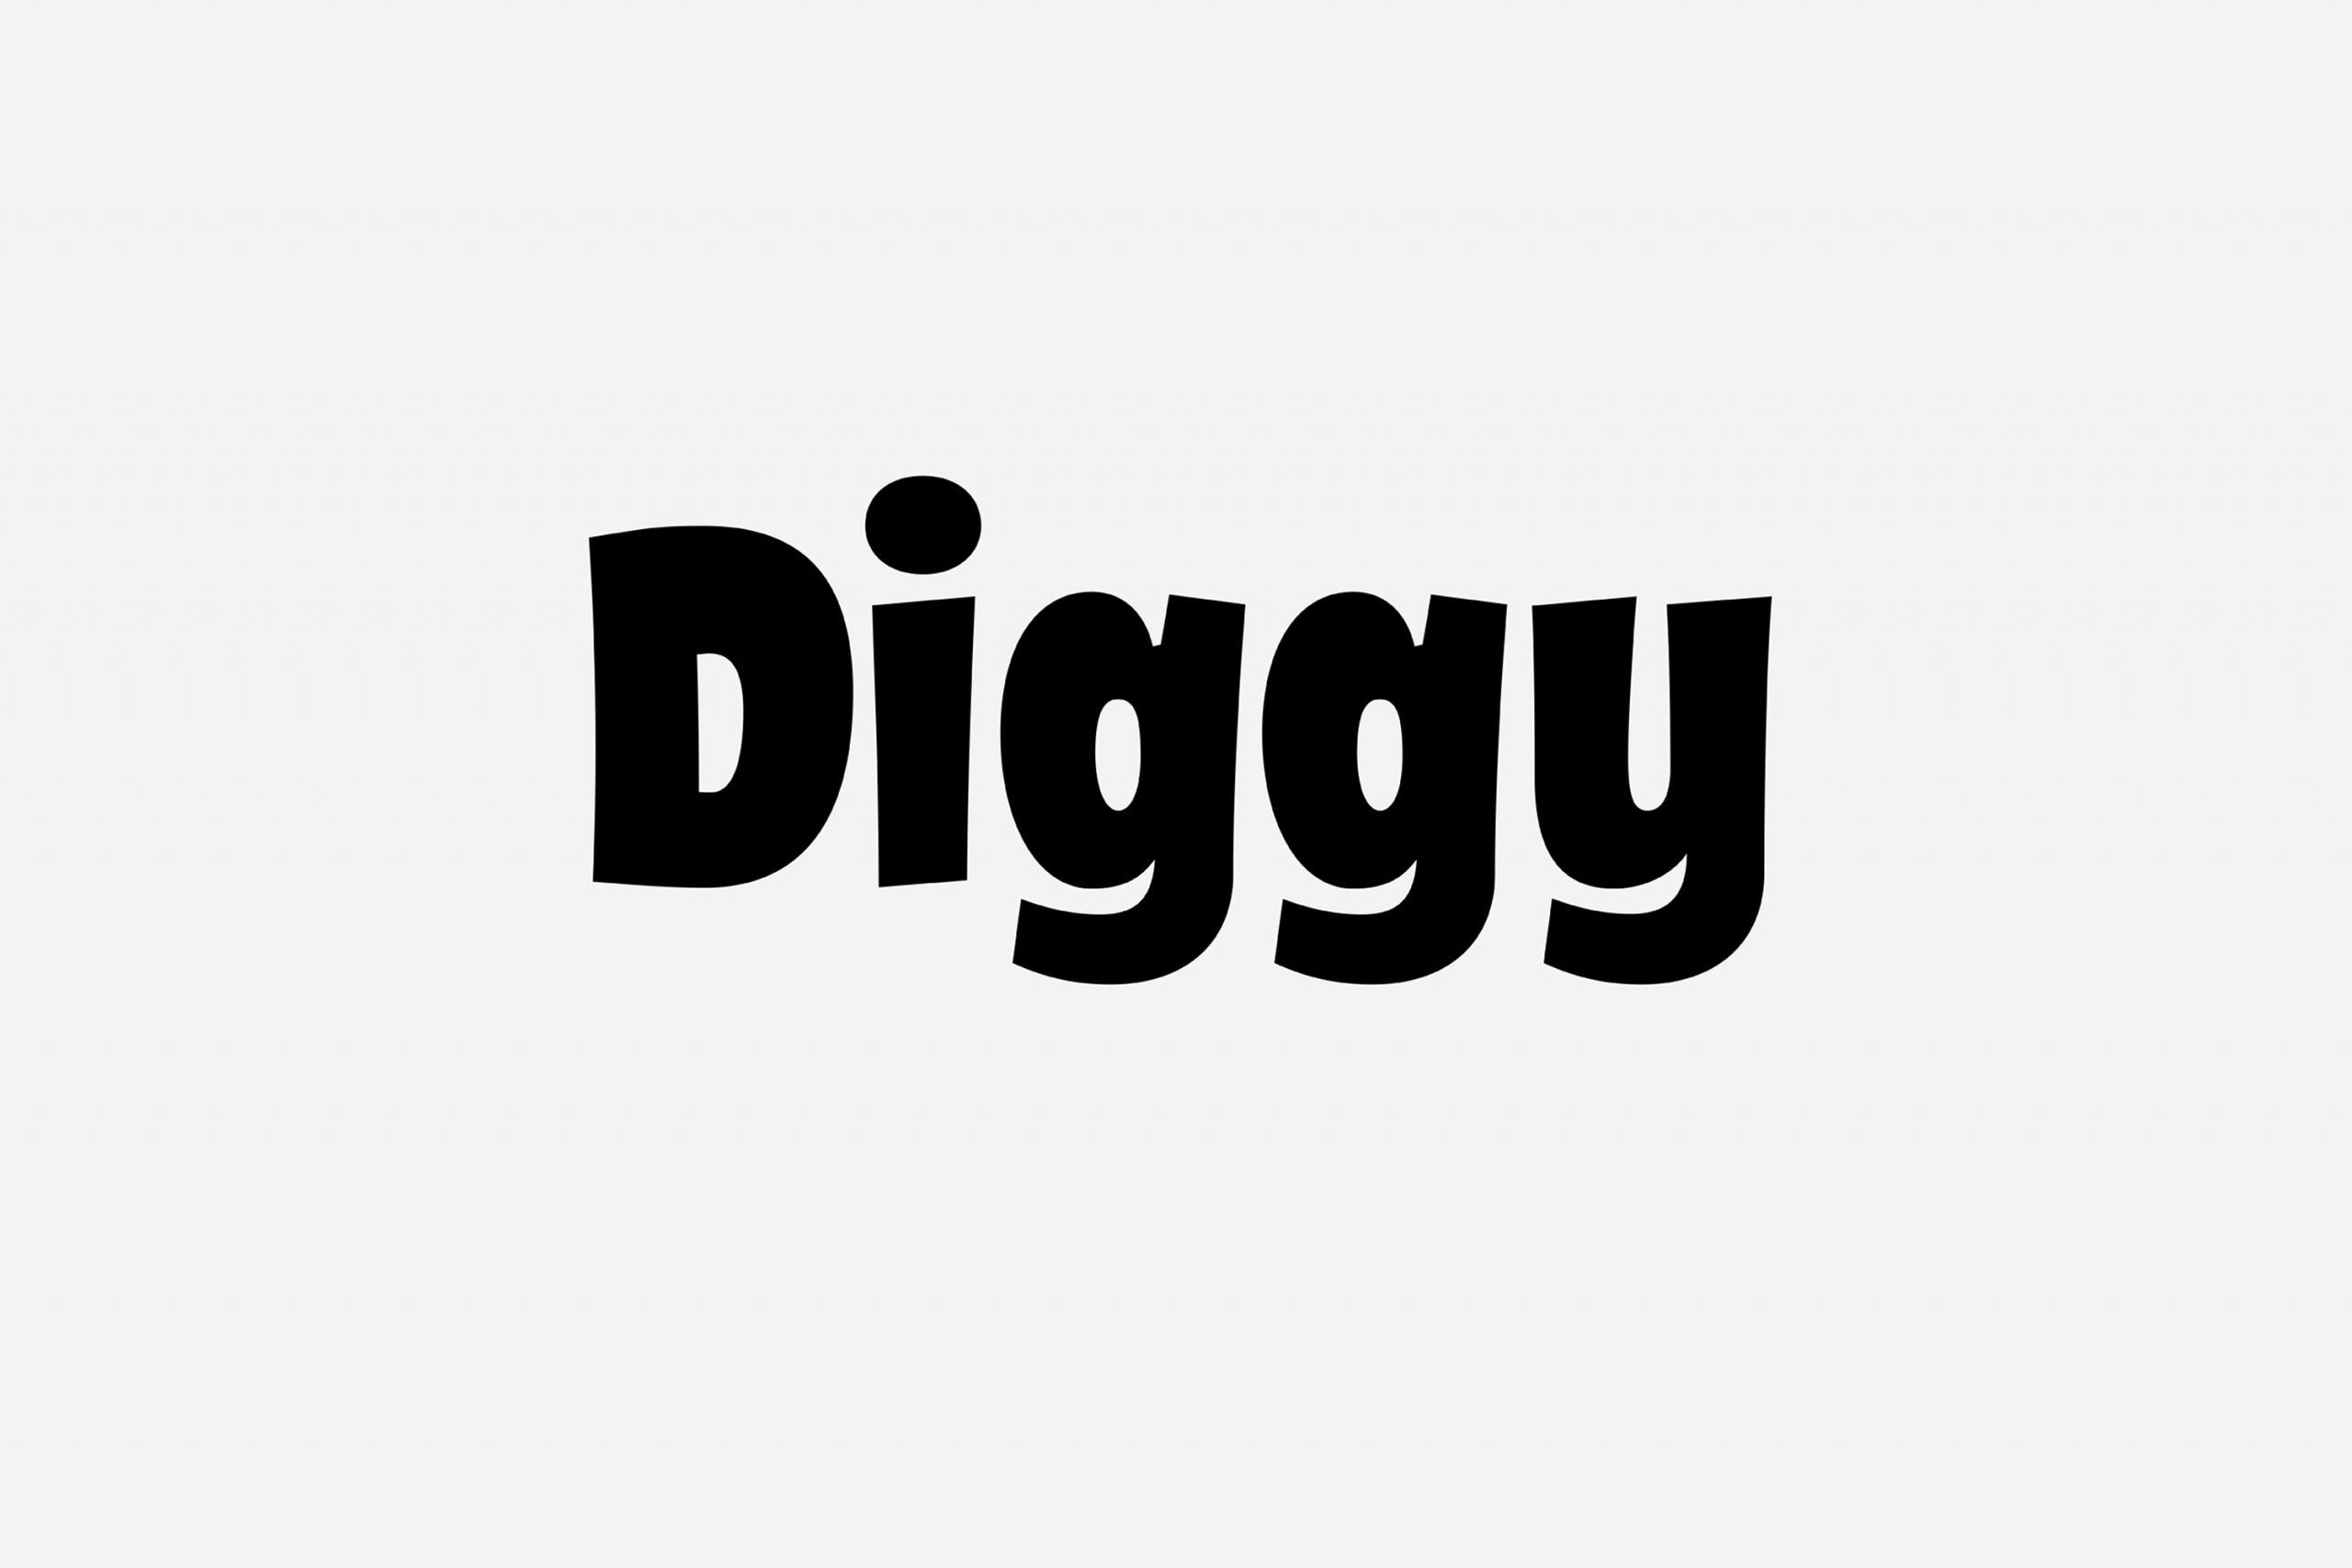 Diggy